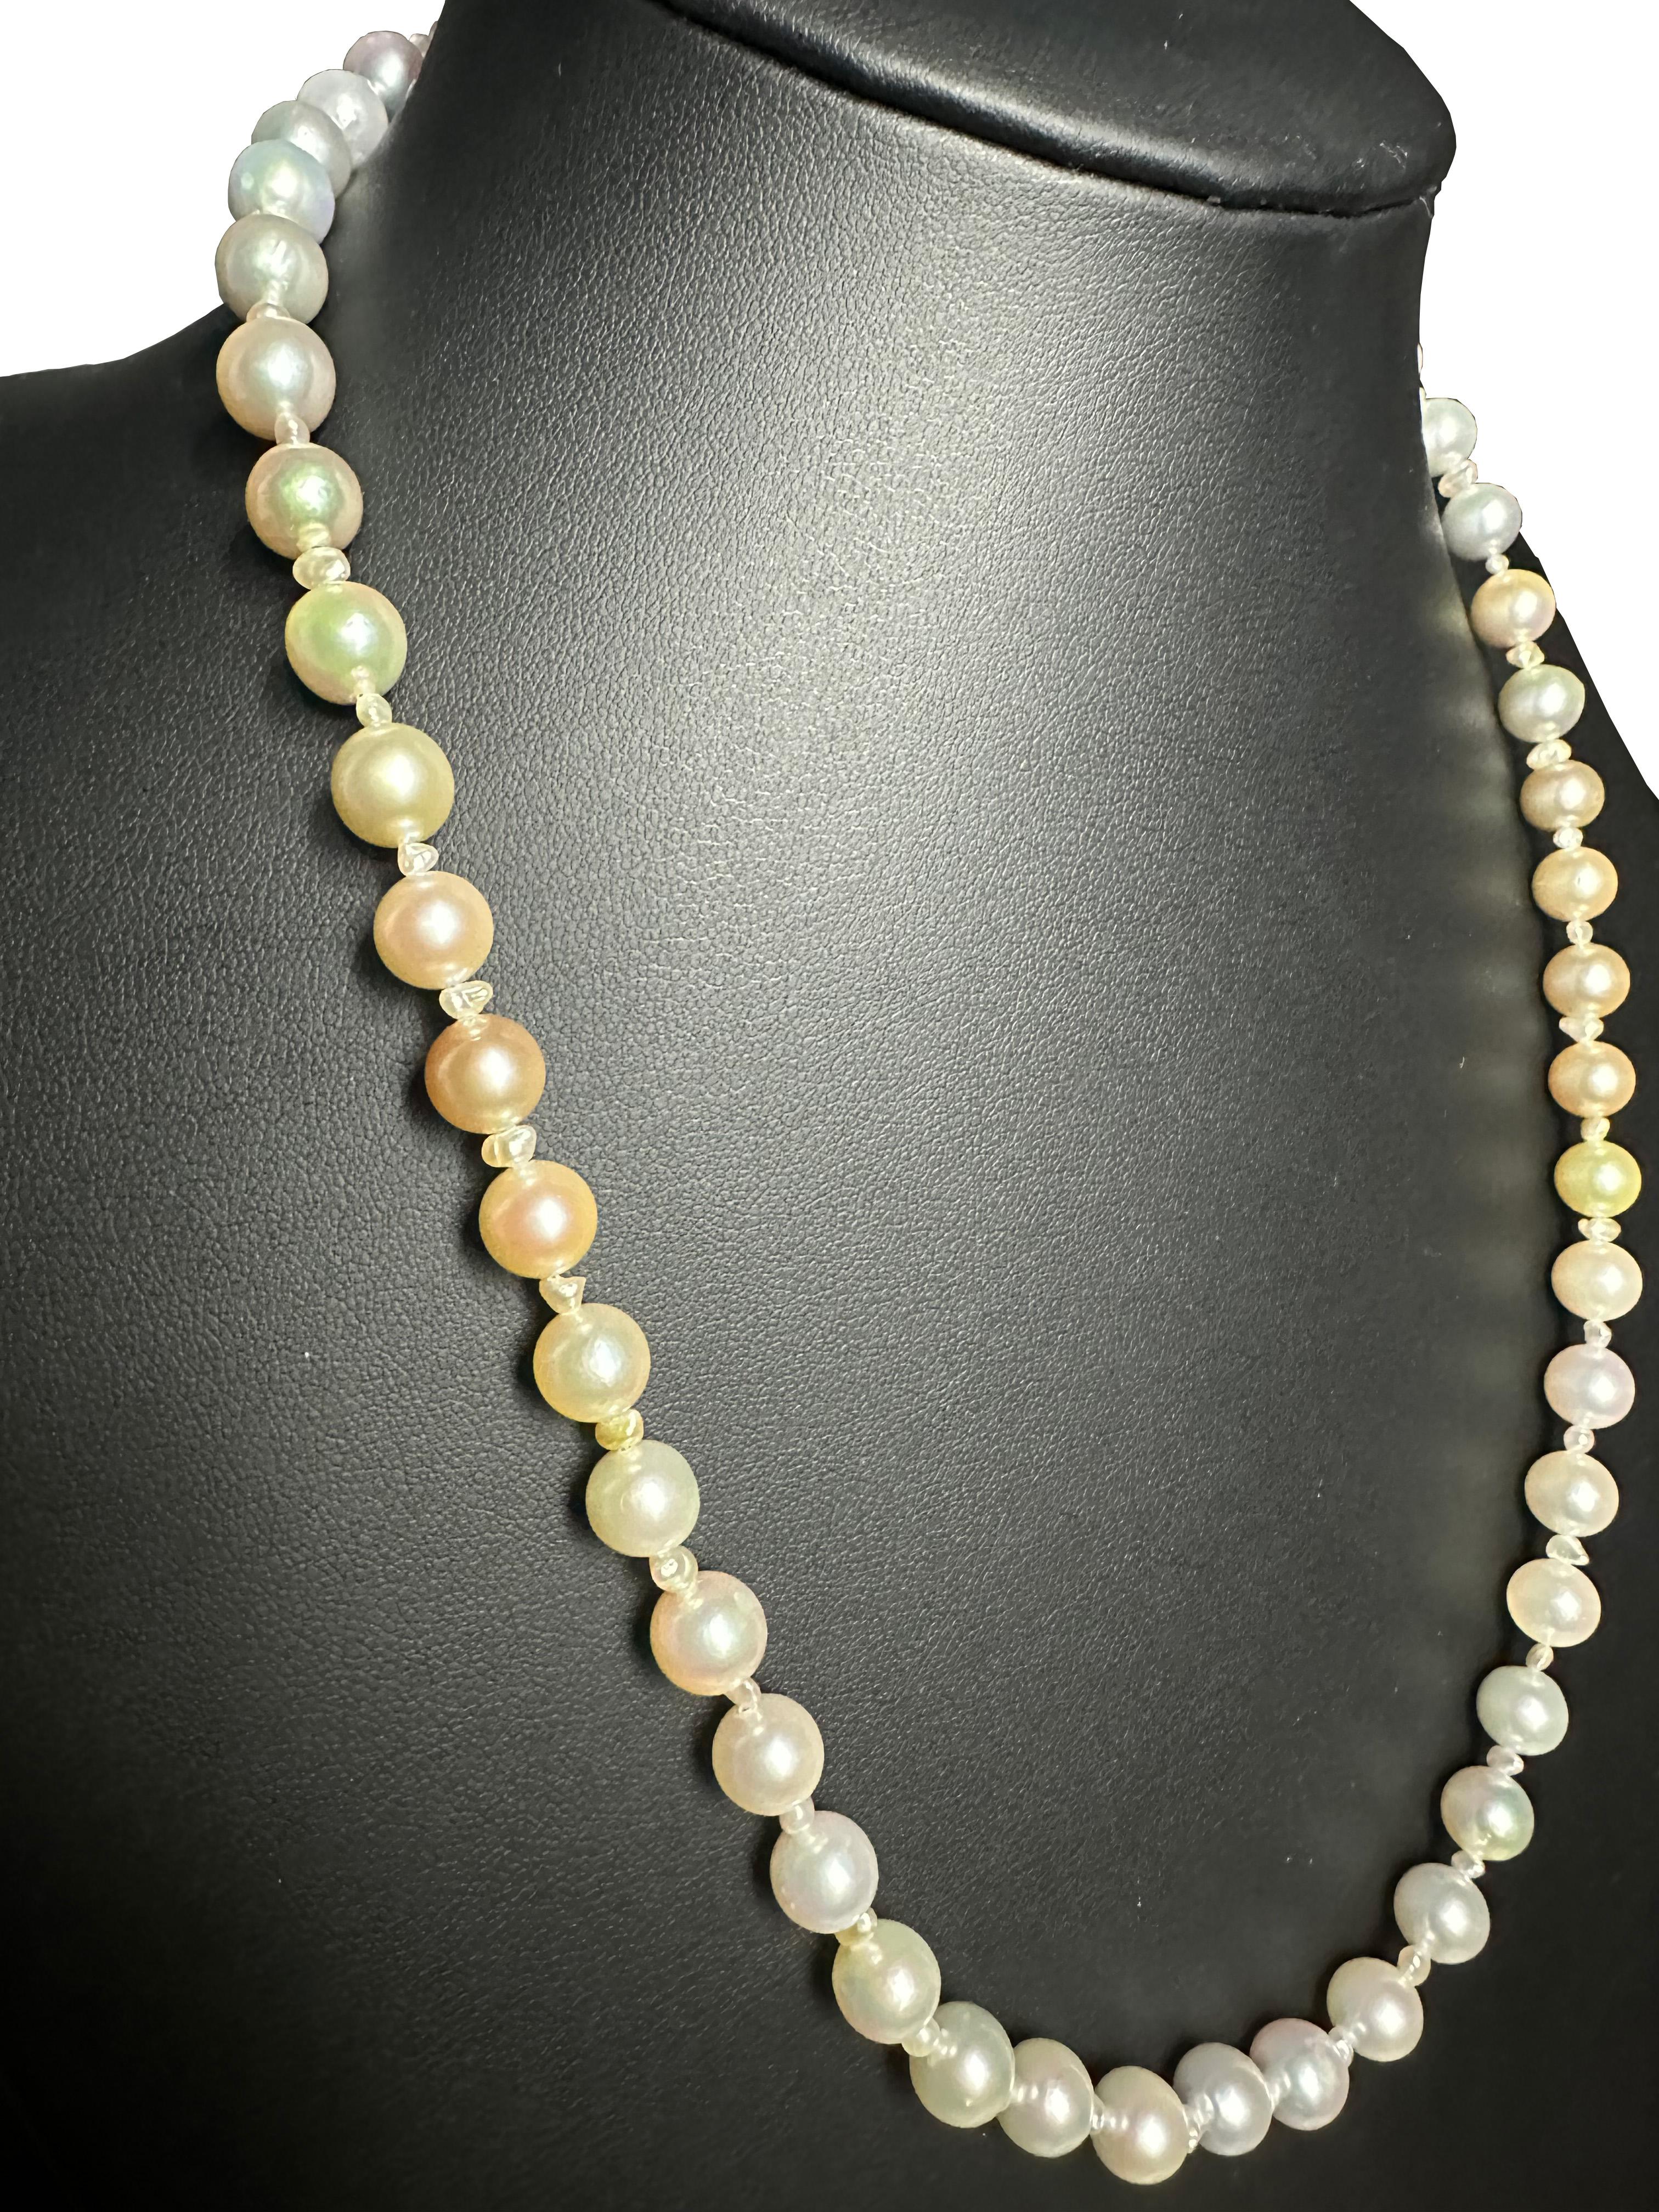 Schöpfer: IRIS PARURE
Perlenfarm: Ehime, Uwajima, JAPAN
Eigenschaften:Nicht gefärbt und nicht gebleicht, BENI AKOYA®
Größe der Perle: 8.0mm-8.50mm
Anzahl der Perlen: 53

 IRIS PARURE stellt seit ihrer Gründung im Jahr 1953 Perlenschmuck von höchster